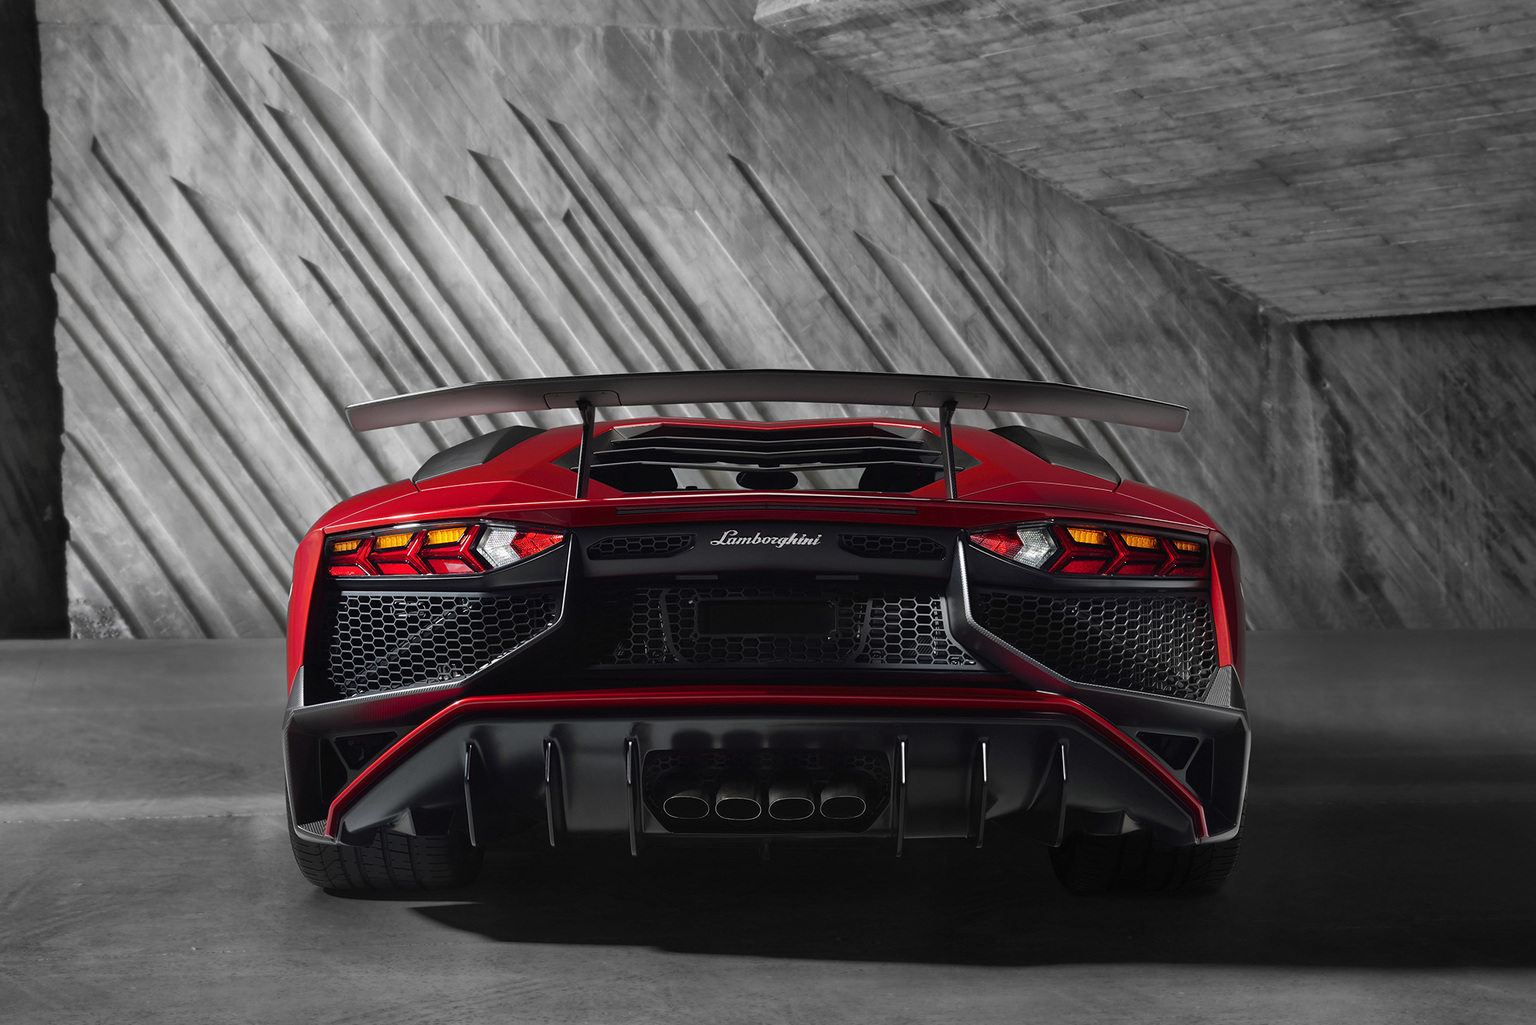 2015 Lamborghini Aventador LP 750-4 Superveloce